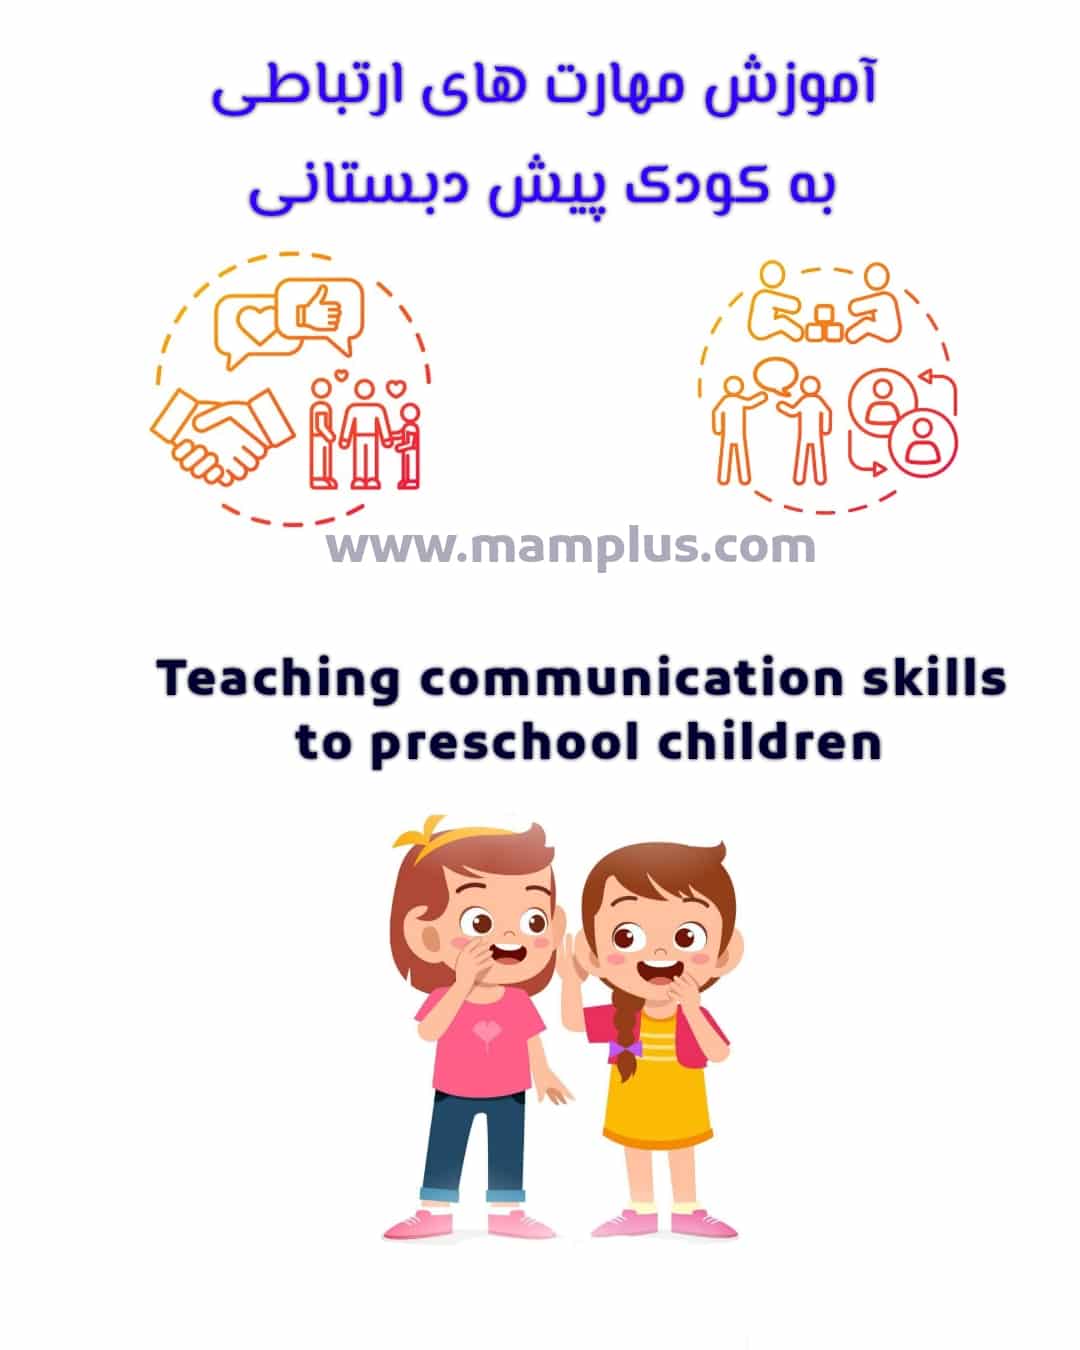 آموزش مهارت های ارتباطی به کودک .jpg